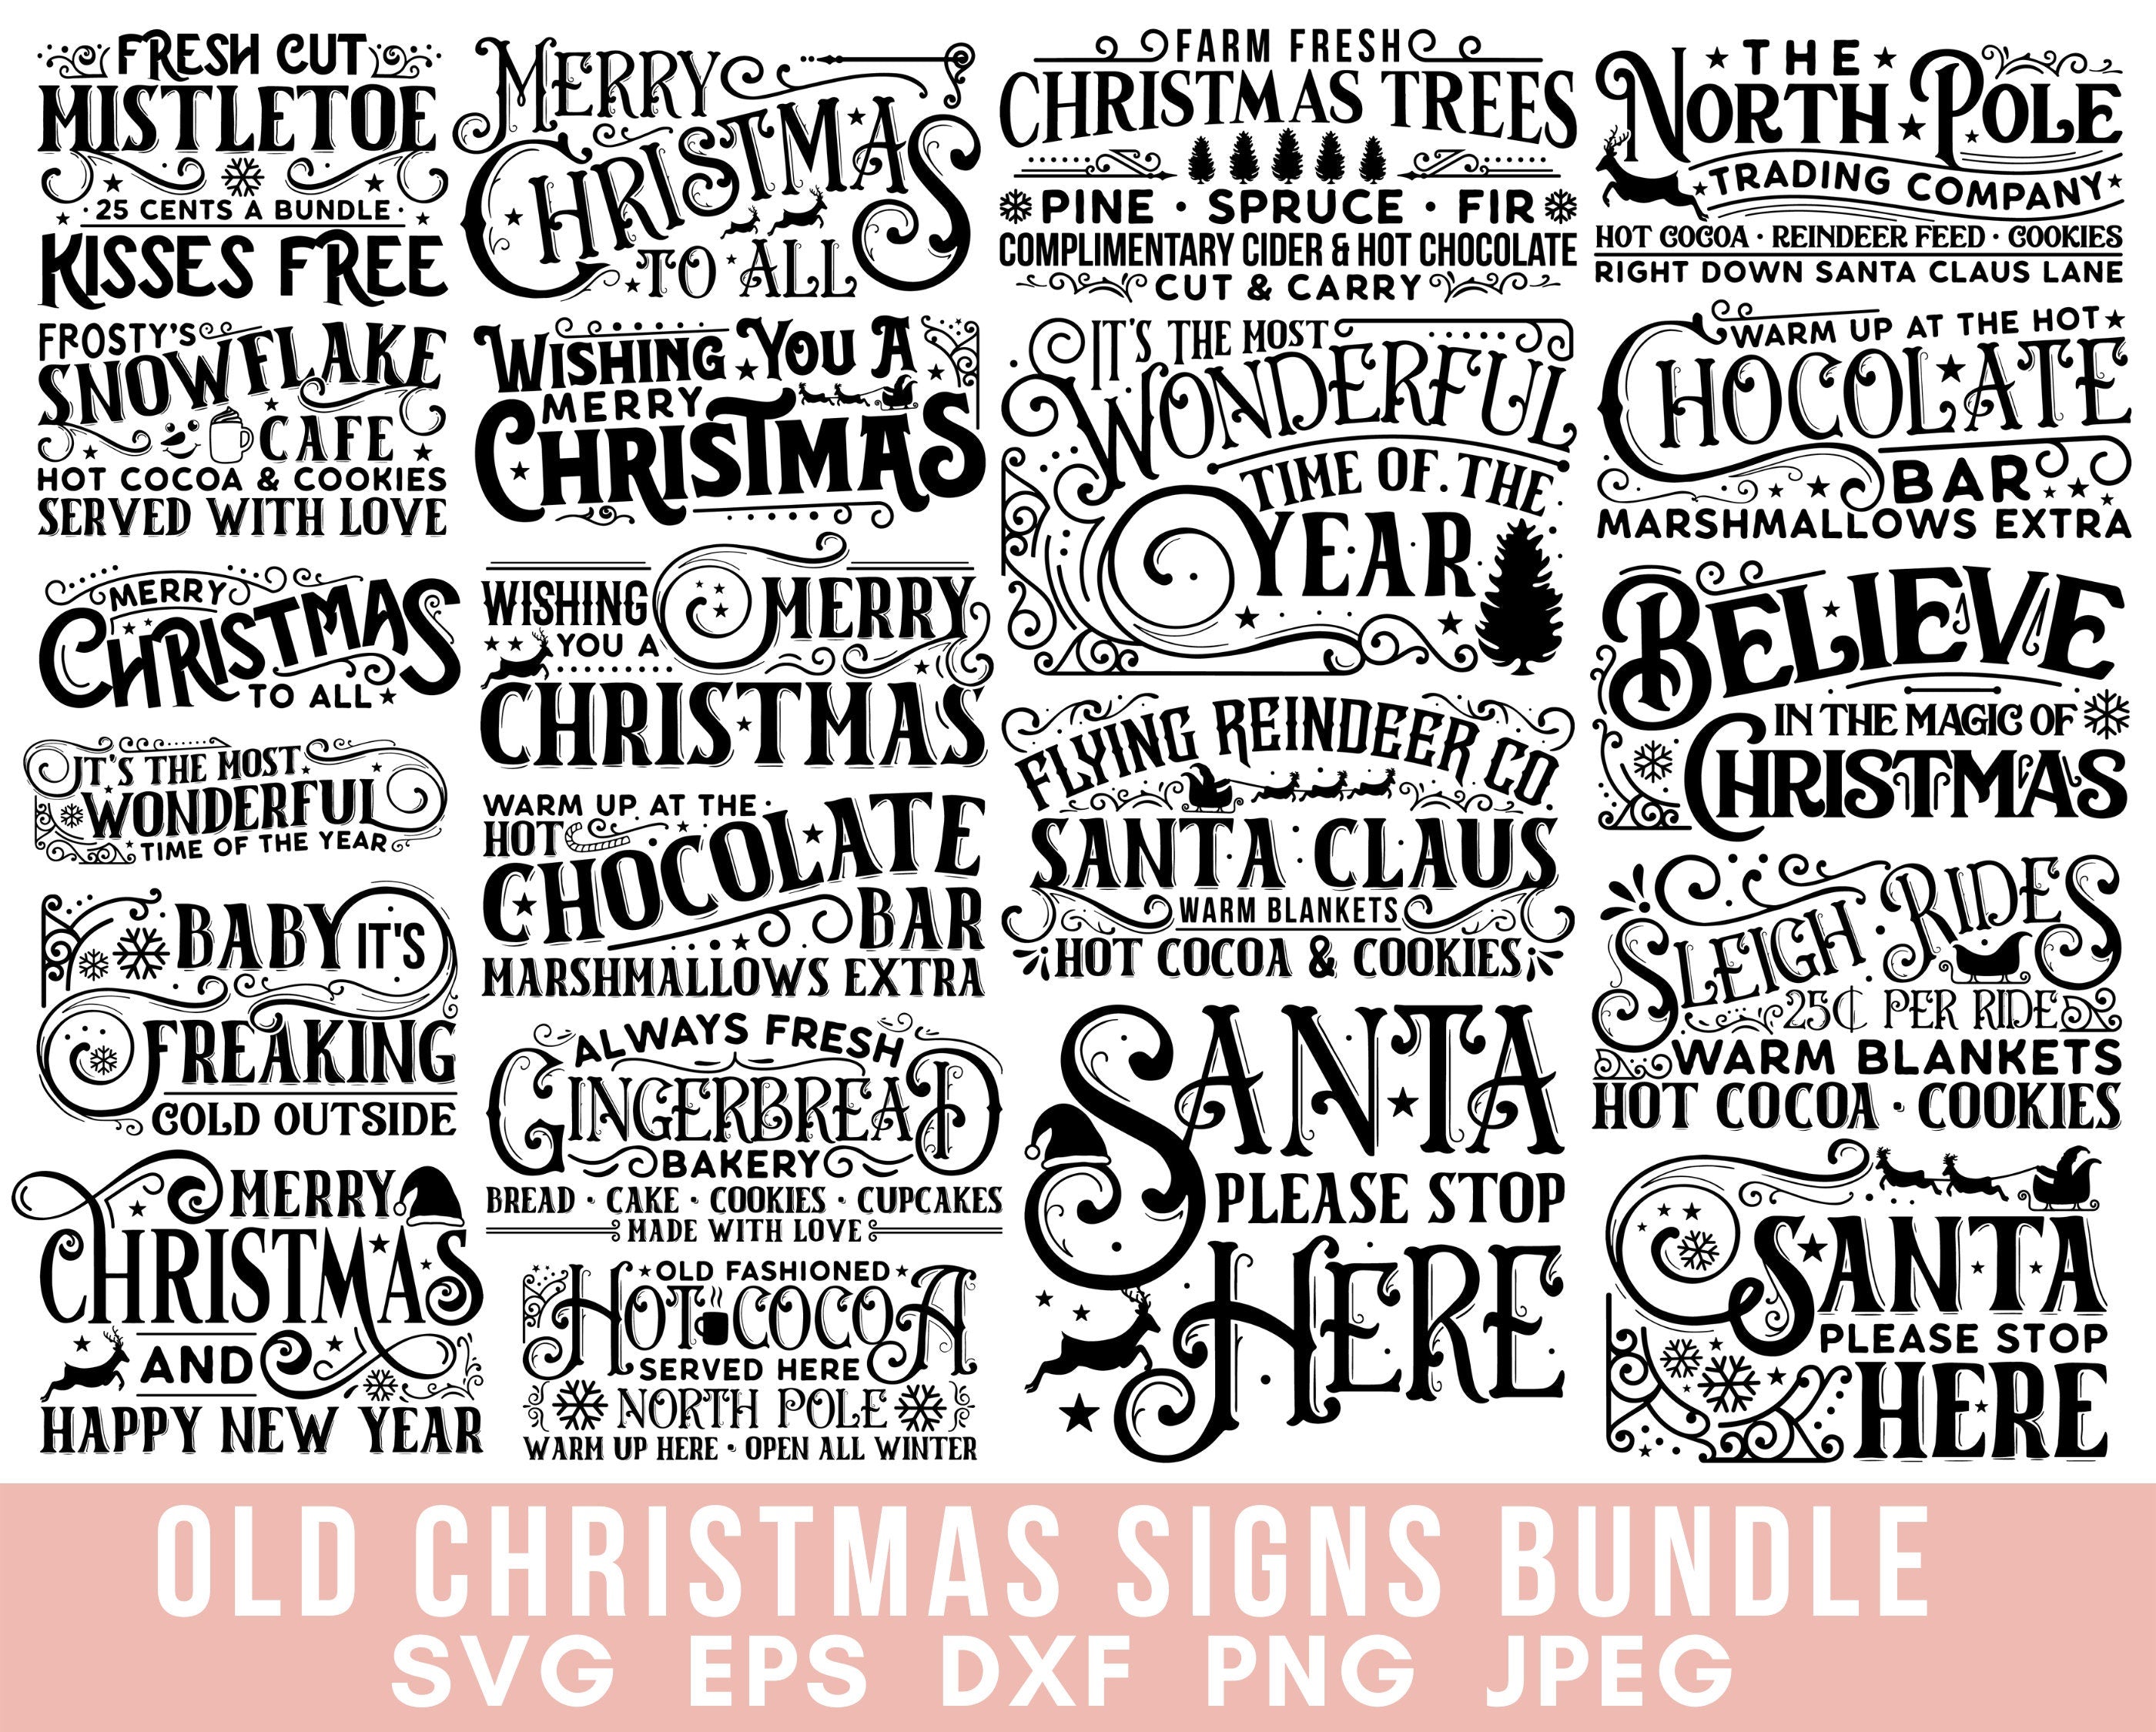 Christmas SVG, Vintage Christmas Street Signs SVG Files